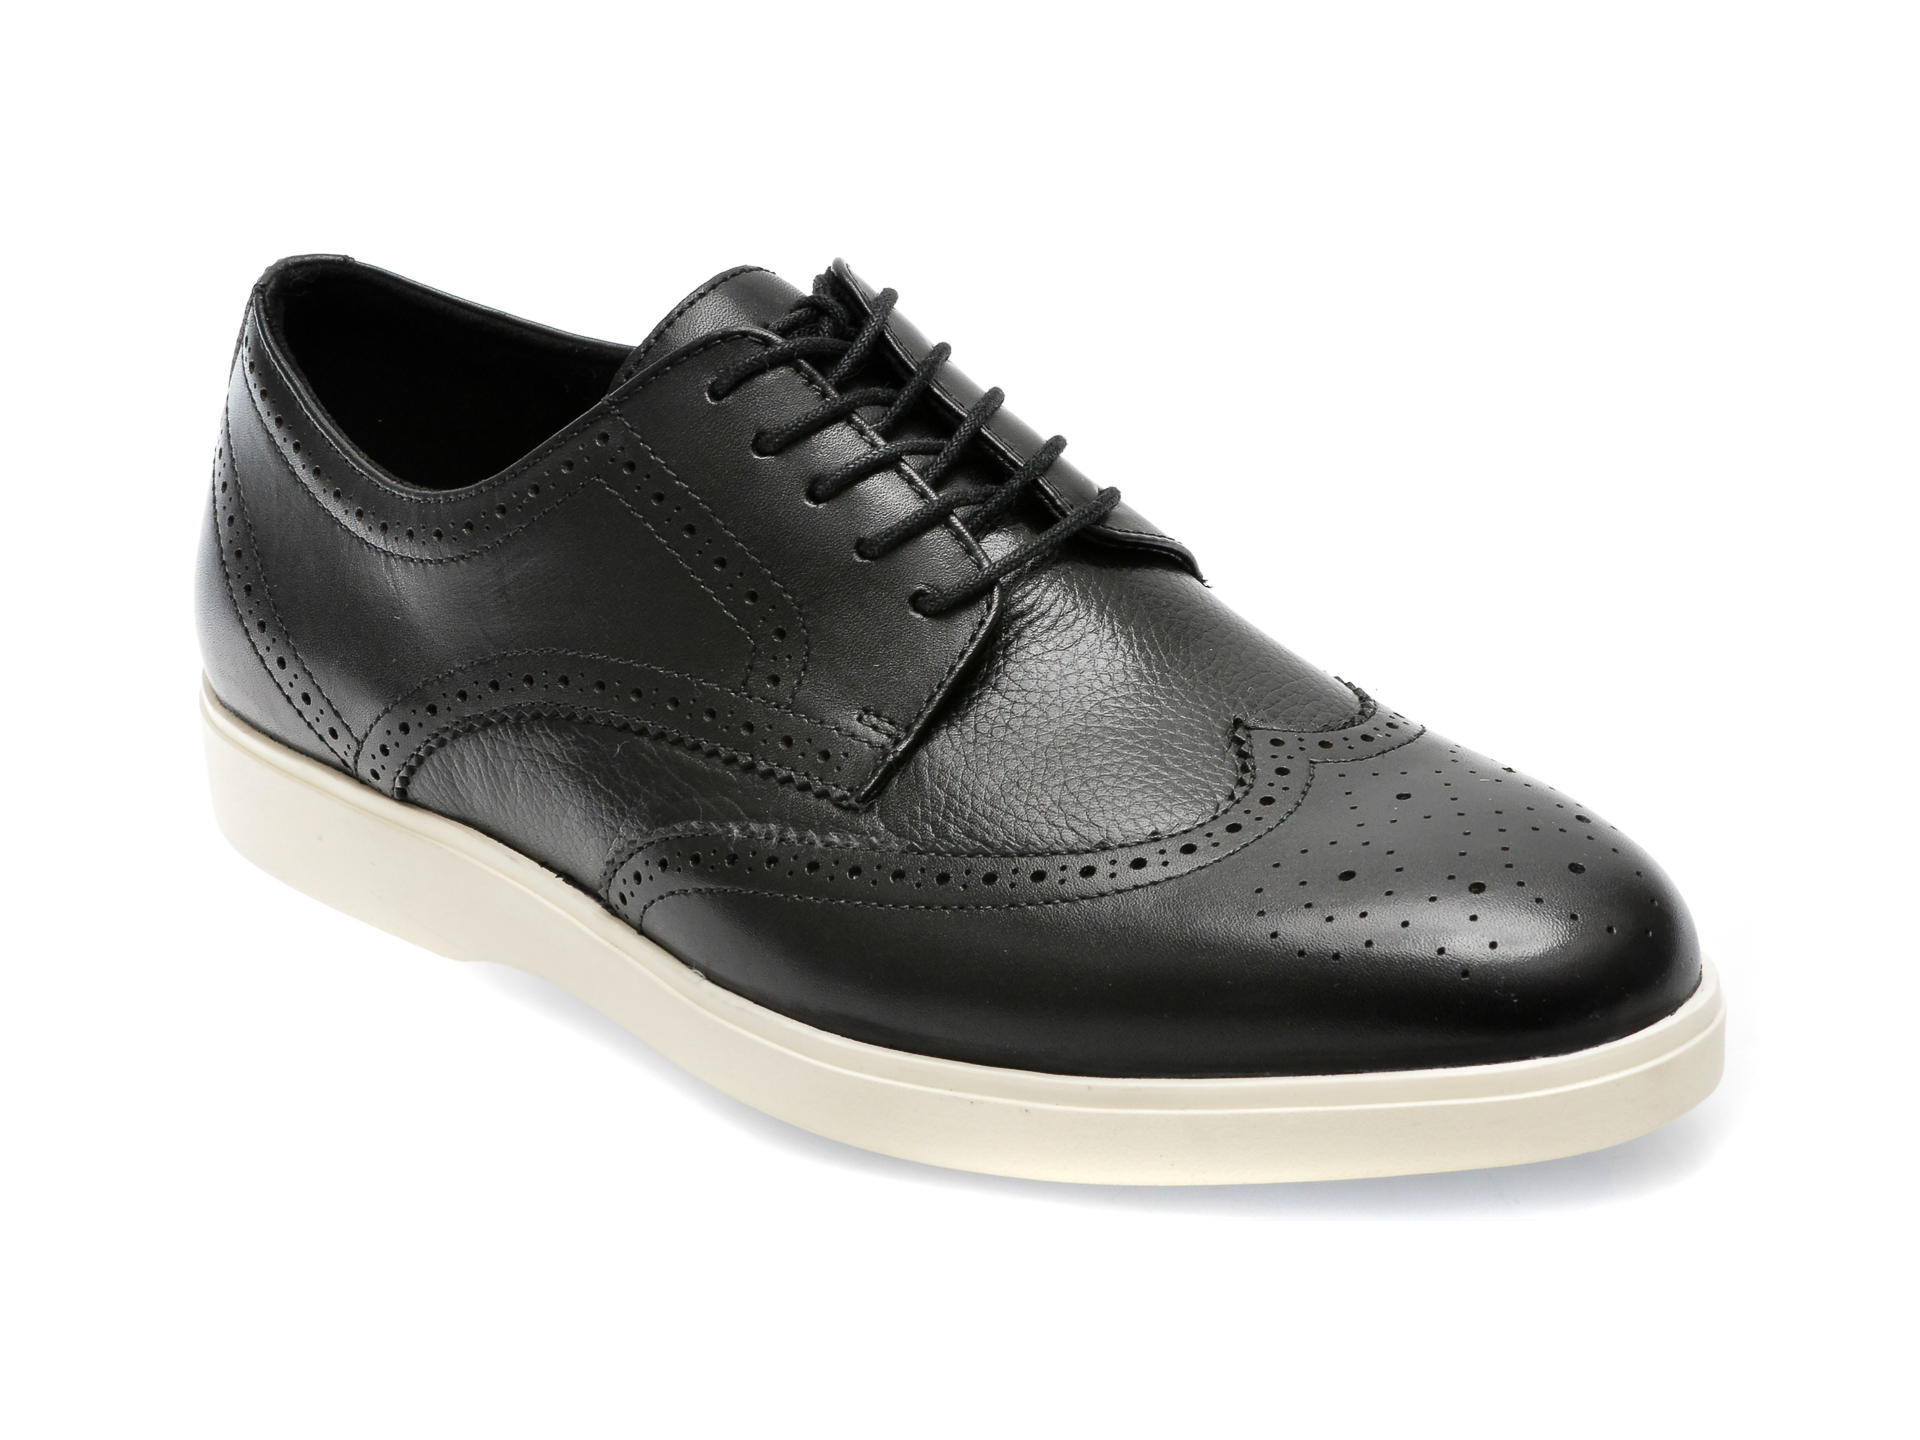 Pantofi ALDO negri, 13618293, din piele naturala /barbati/pantofi